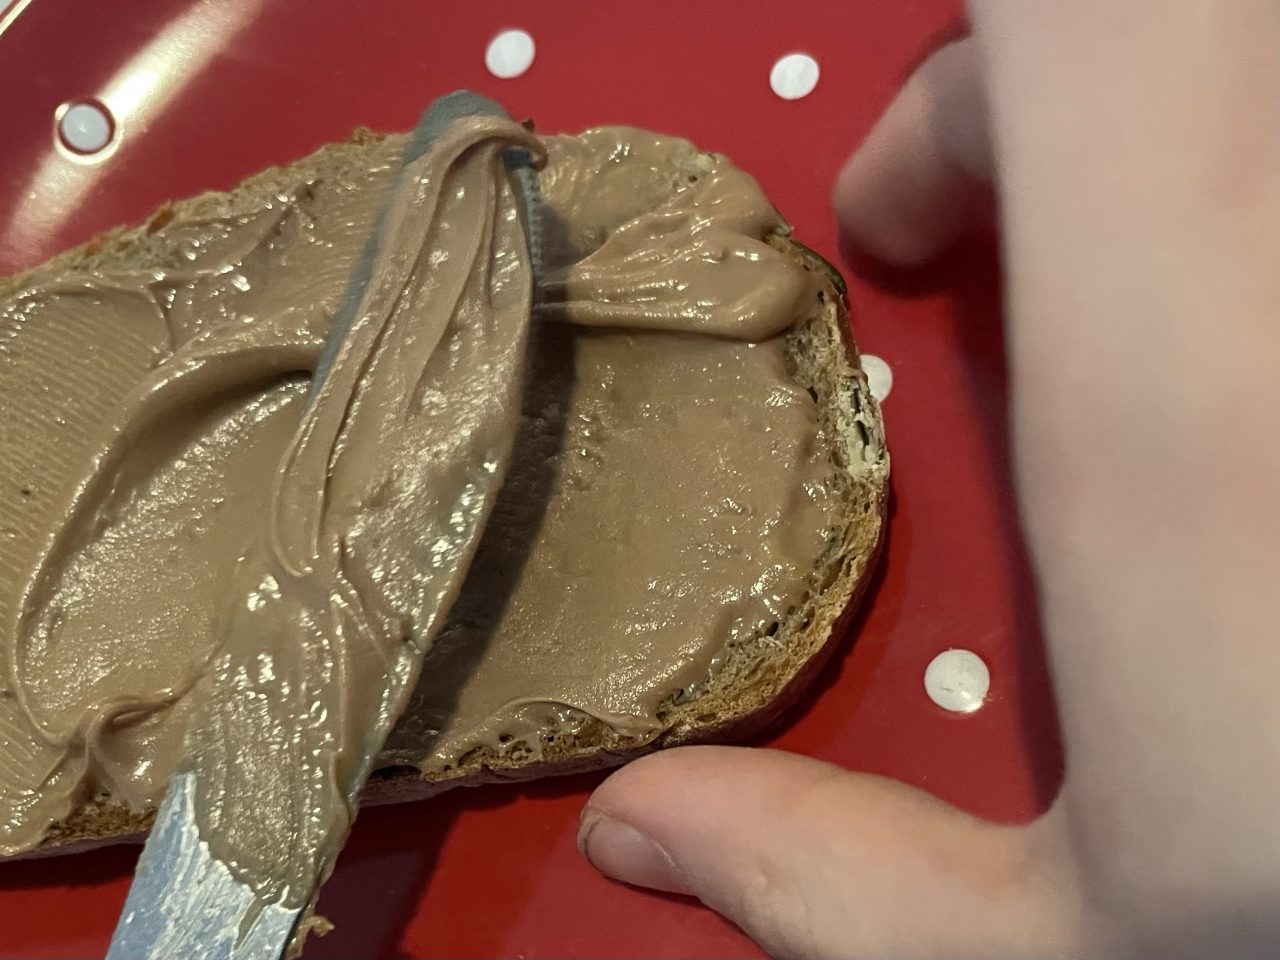 Brot, dass mit Schokolade bestrichen wird